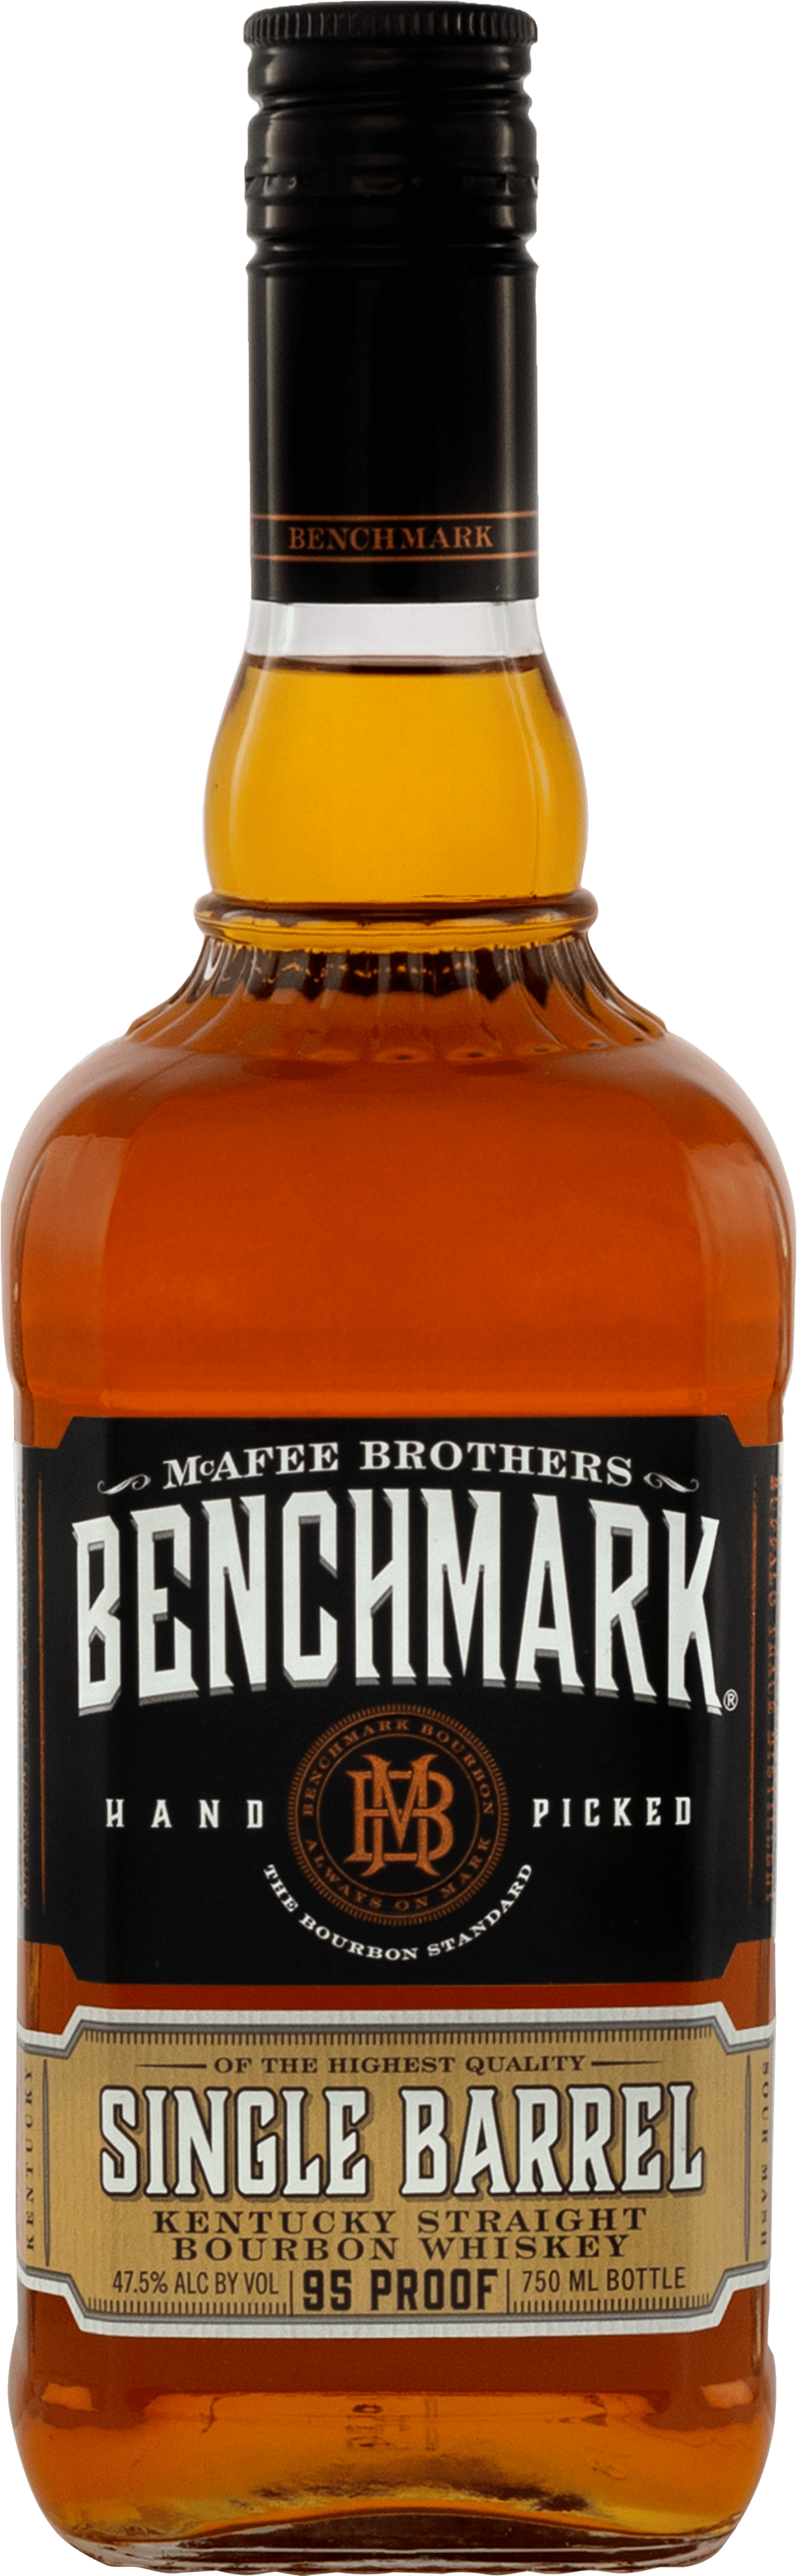 Benchmark Single Barrel Kentucky Straight Bourbon Whiskey bottle